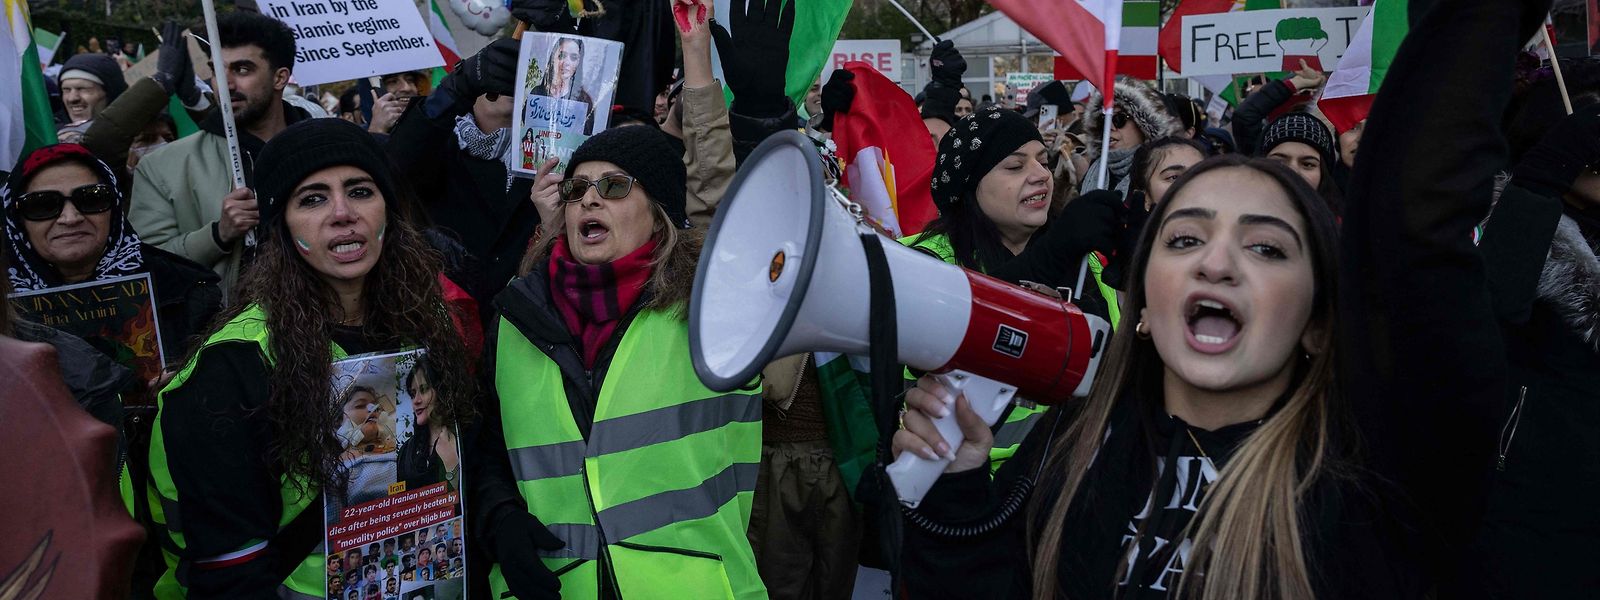 Der Tod der iranischen Kurdin Mahsa Amini löste die Protestwelle aus – mittlerweile gehen die Menschen weltweit auf die Straßen, um gegen das Regime zu protestieren.